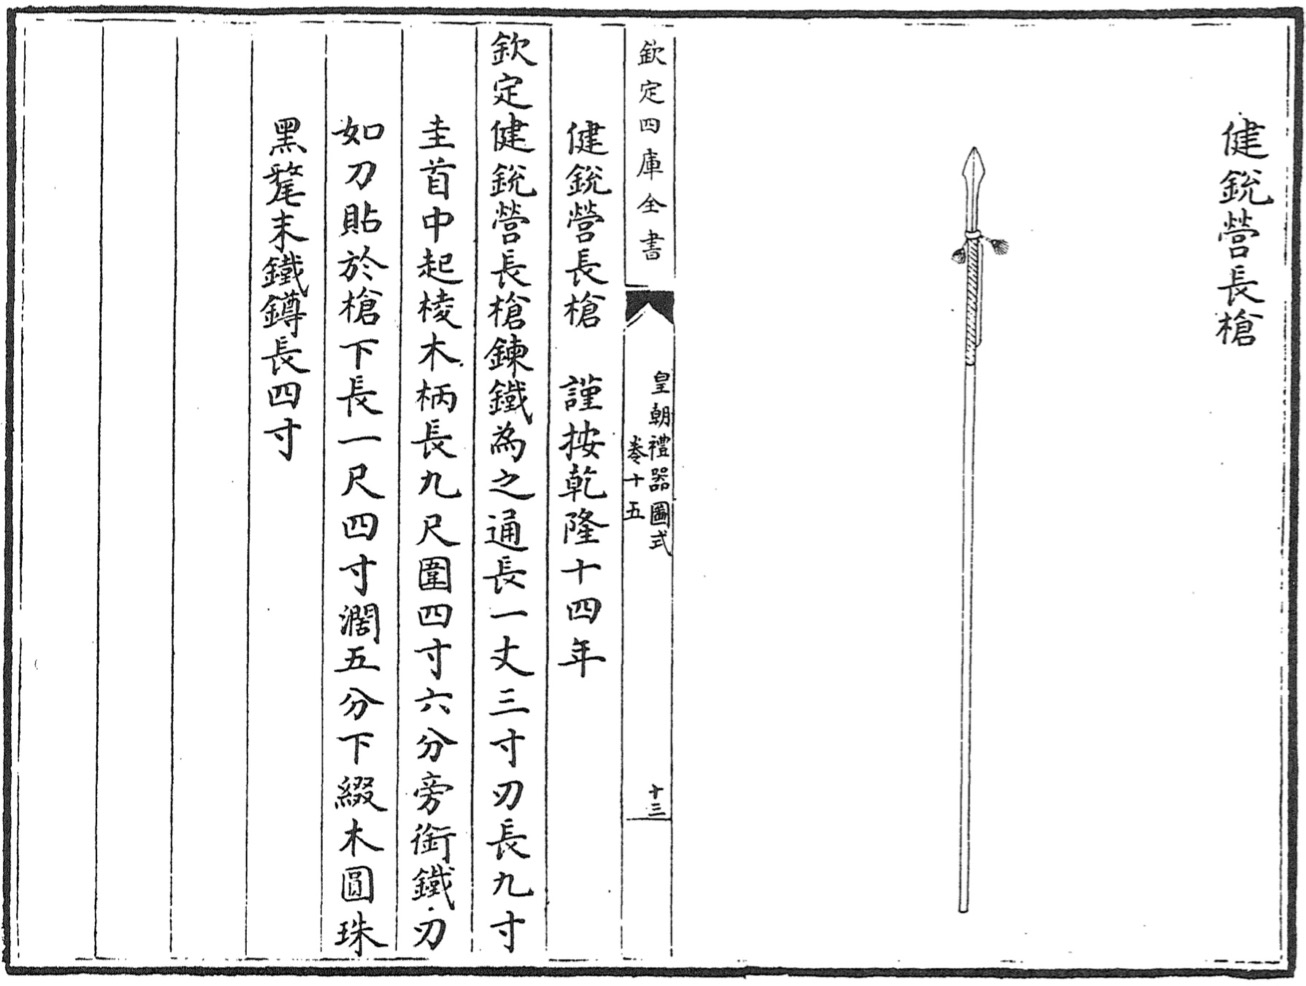 Jianruiying long spear